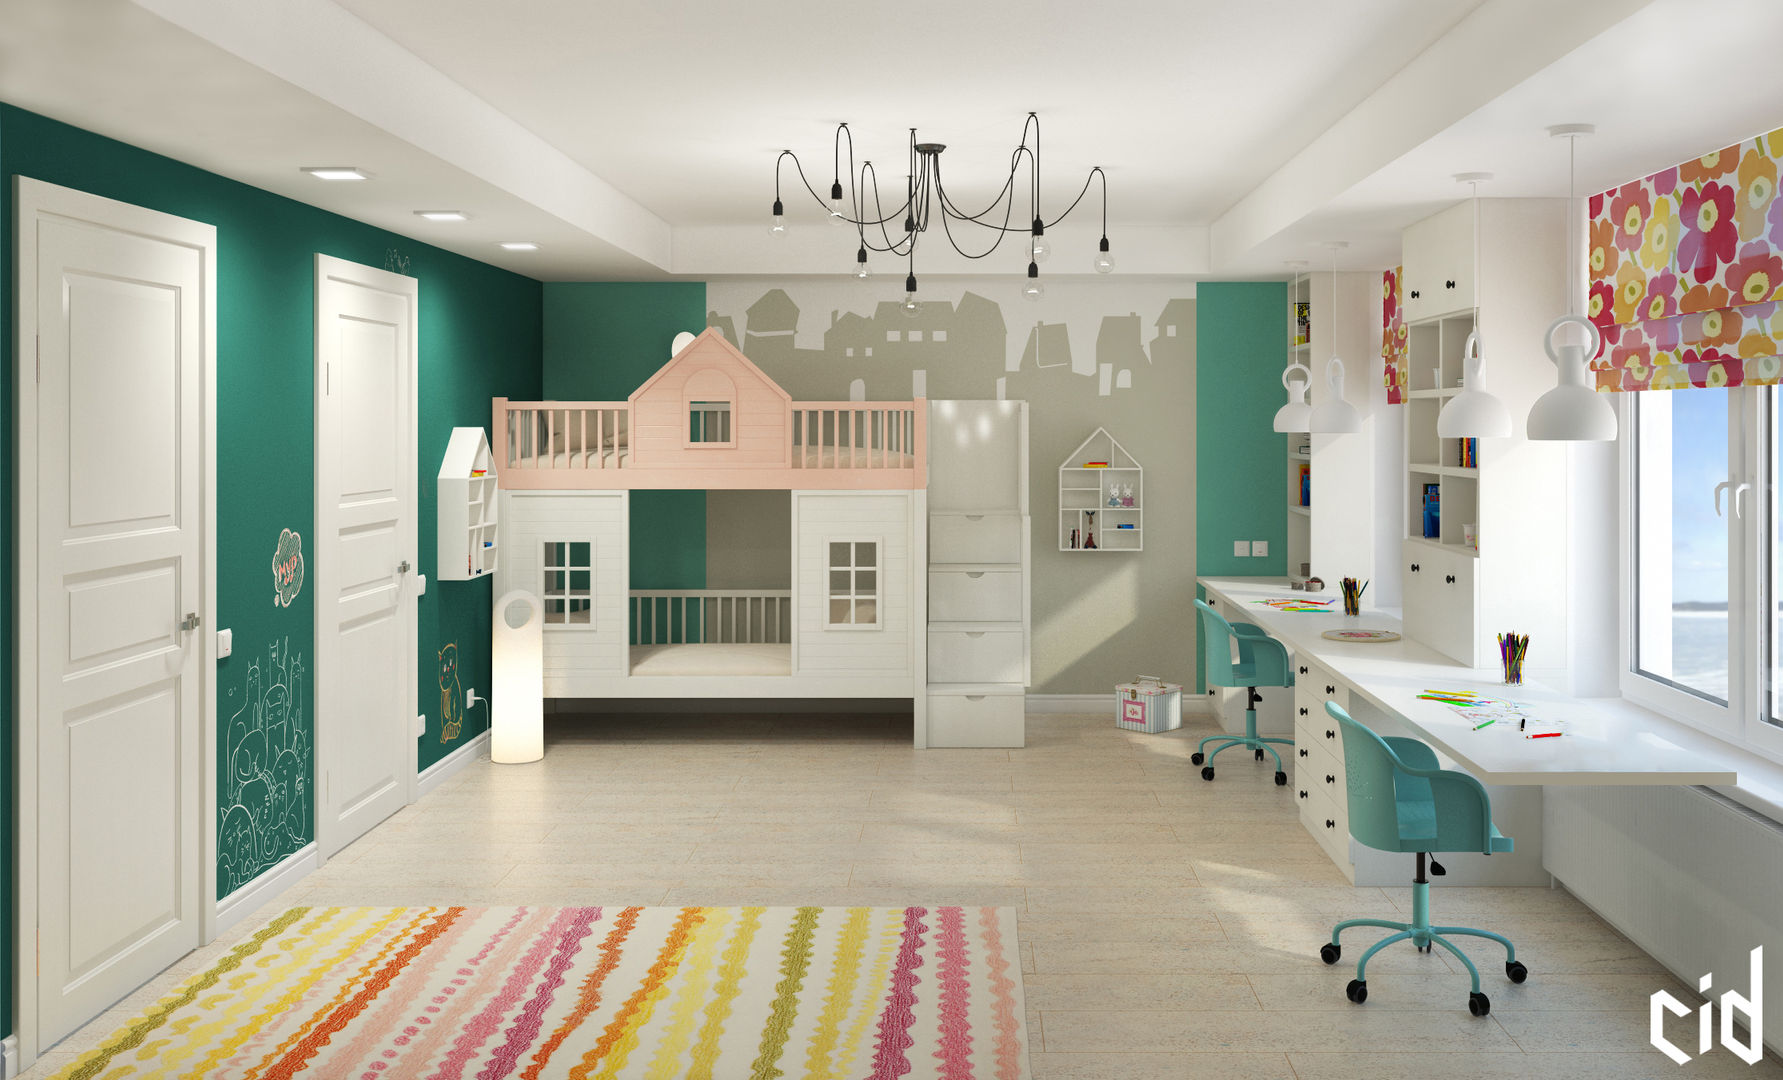 Детская для двух детей, Center of interior design Center of interior design Eclectic style nursery/kids room